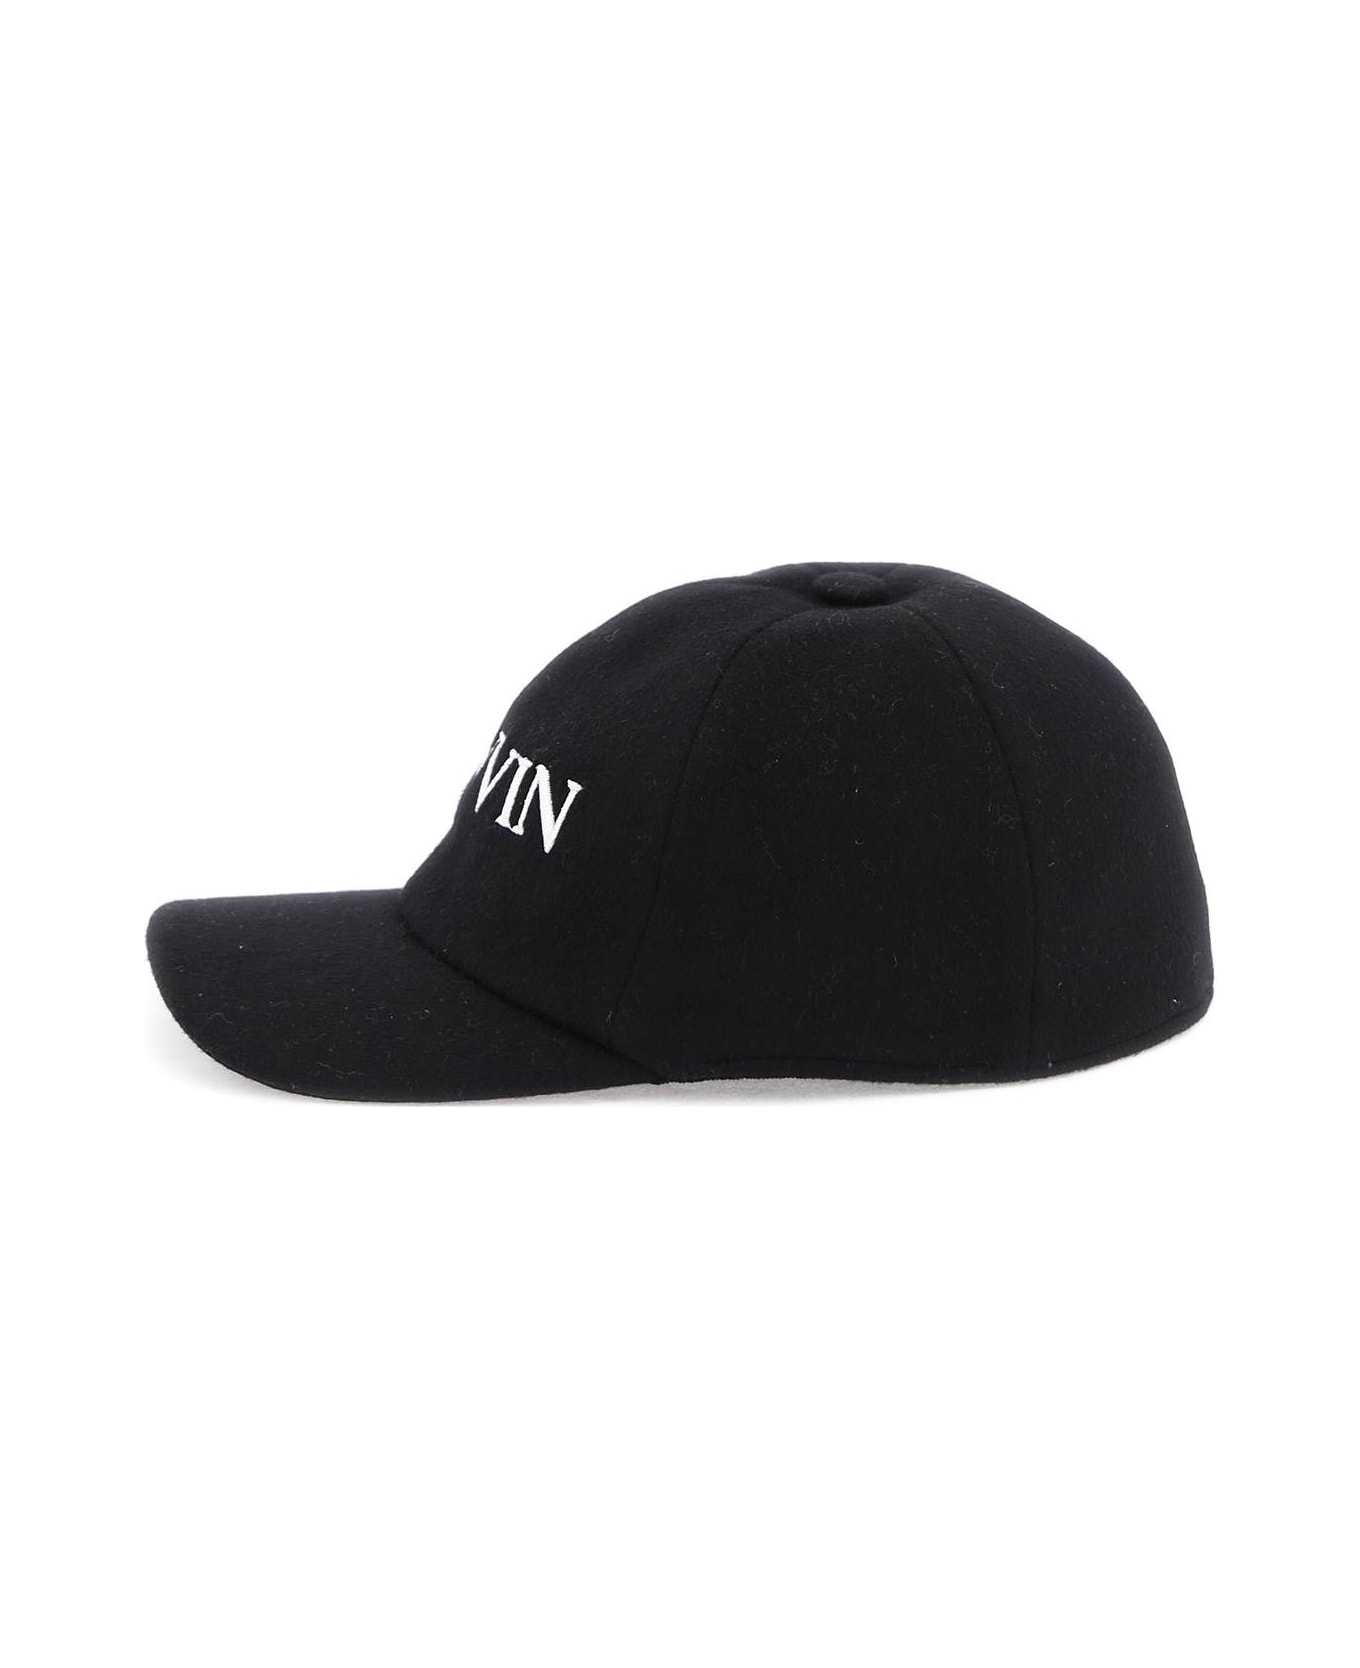 Lanvin Wool Cashmere Baseball Cap - BLACK (Black) ヘアアクセサリー